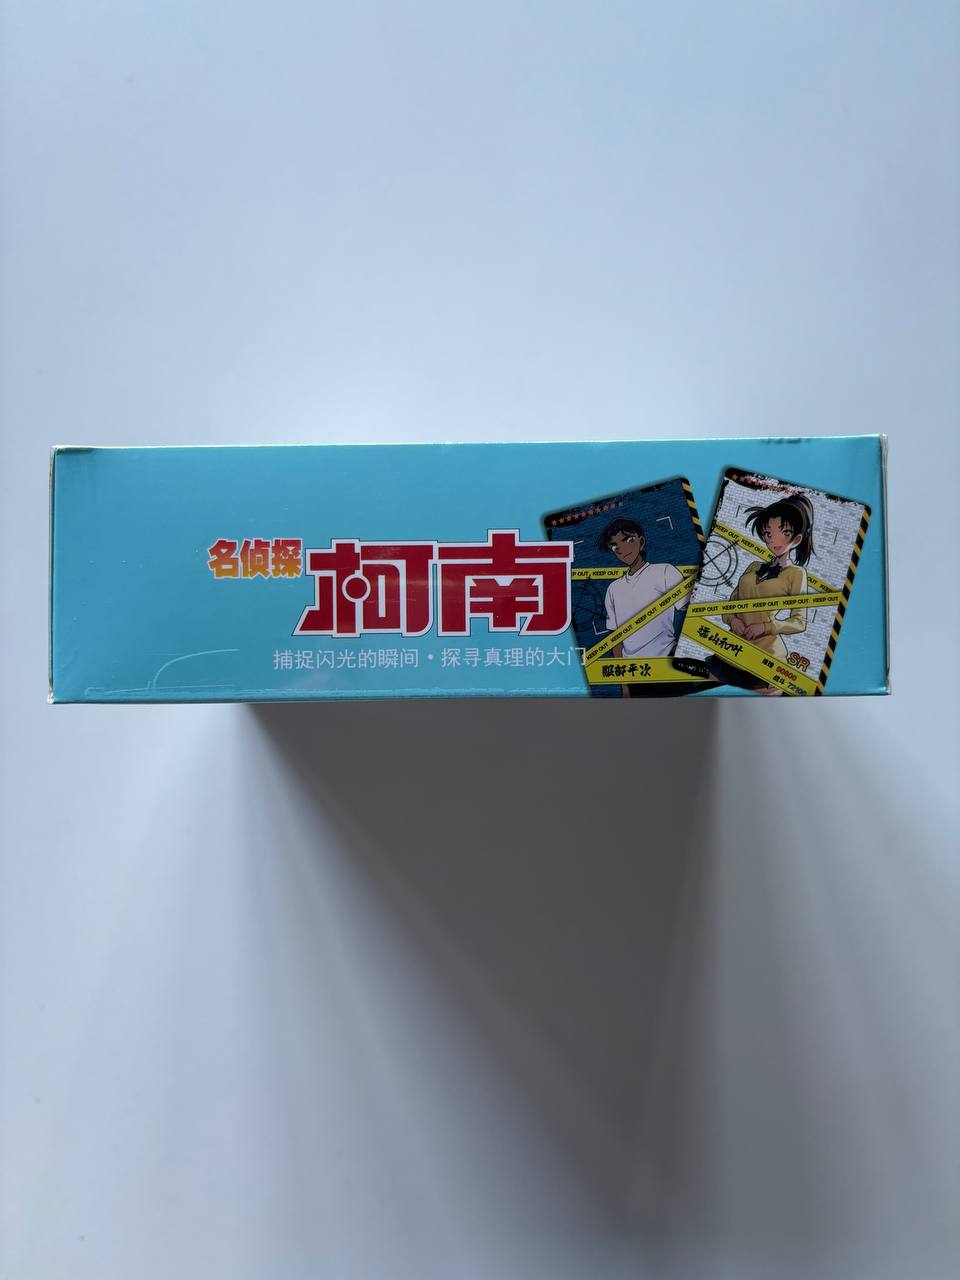 Detective Conan NS03 Display Card Box Sealed